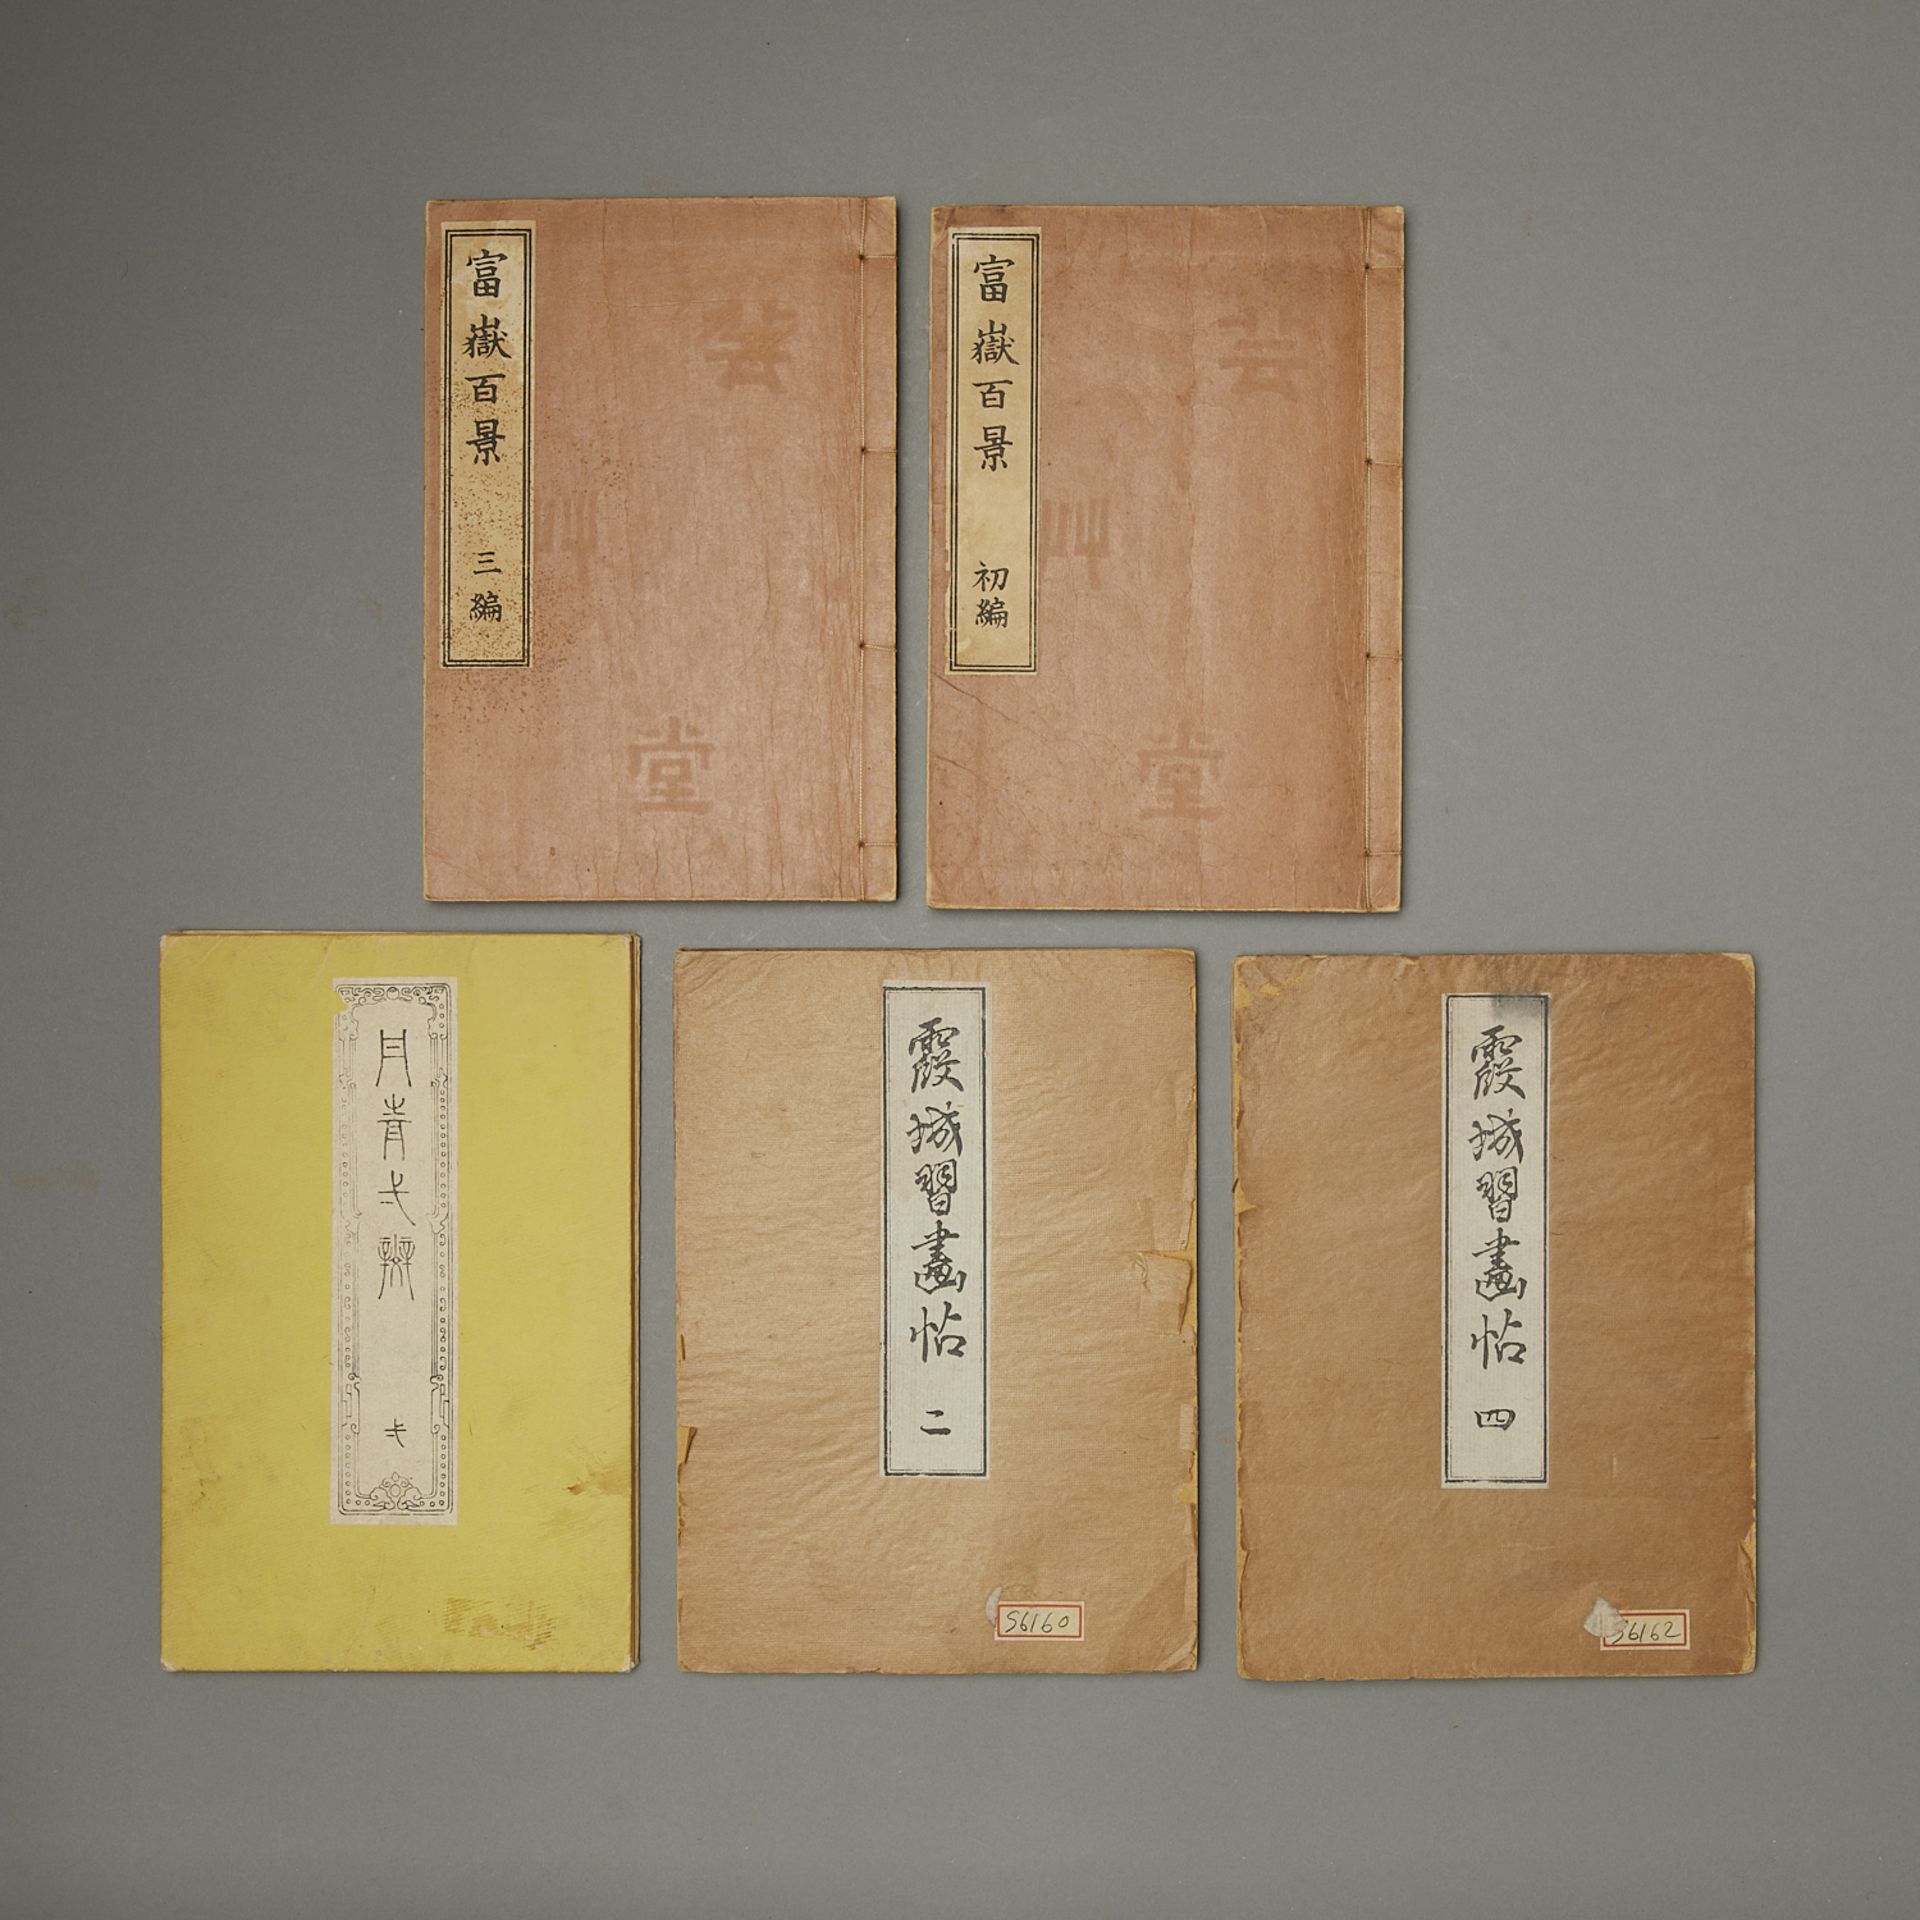 5 Vintage Books on Japanese Woodblocks